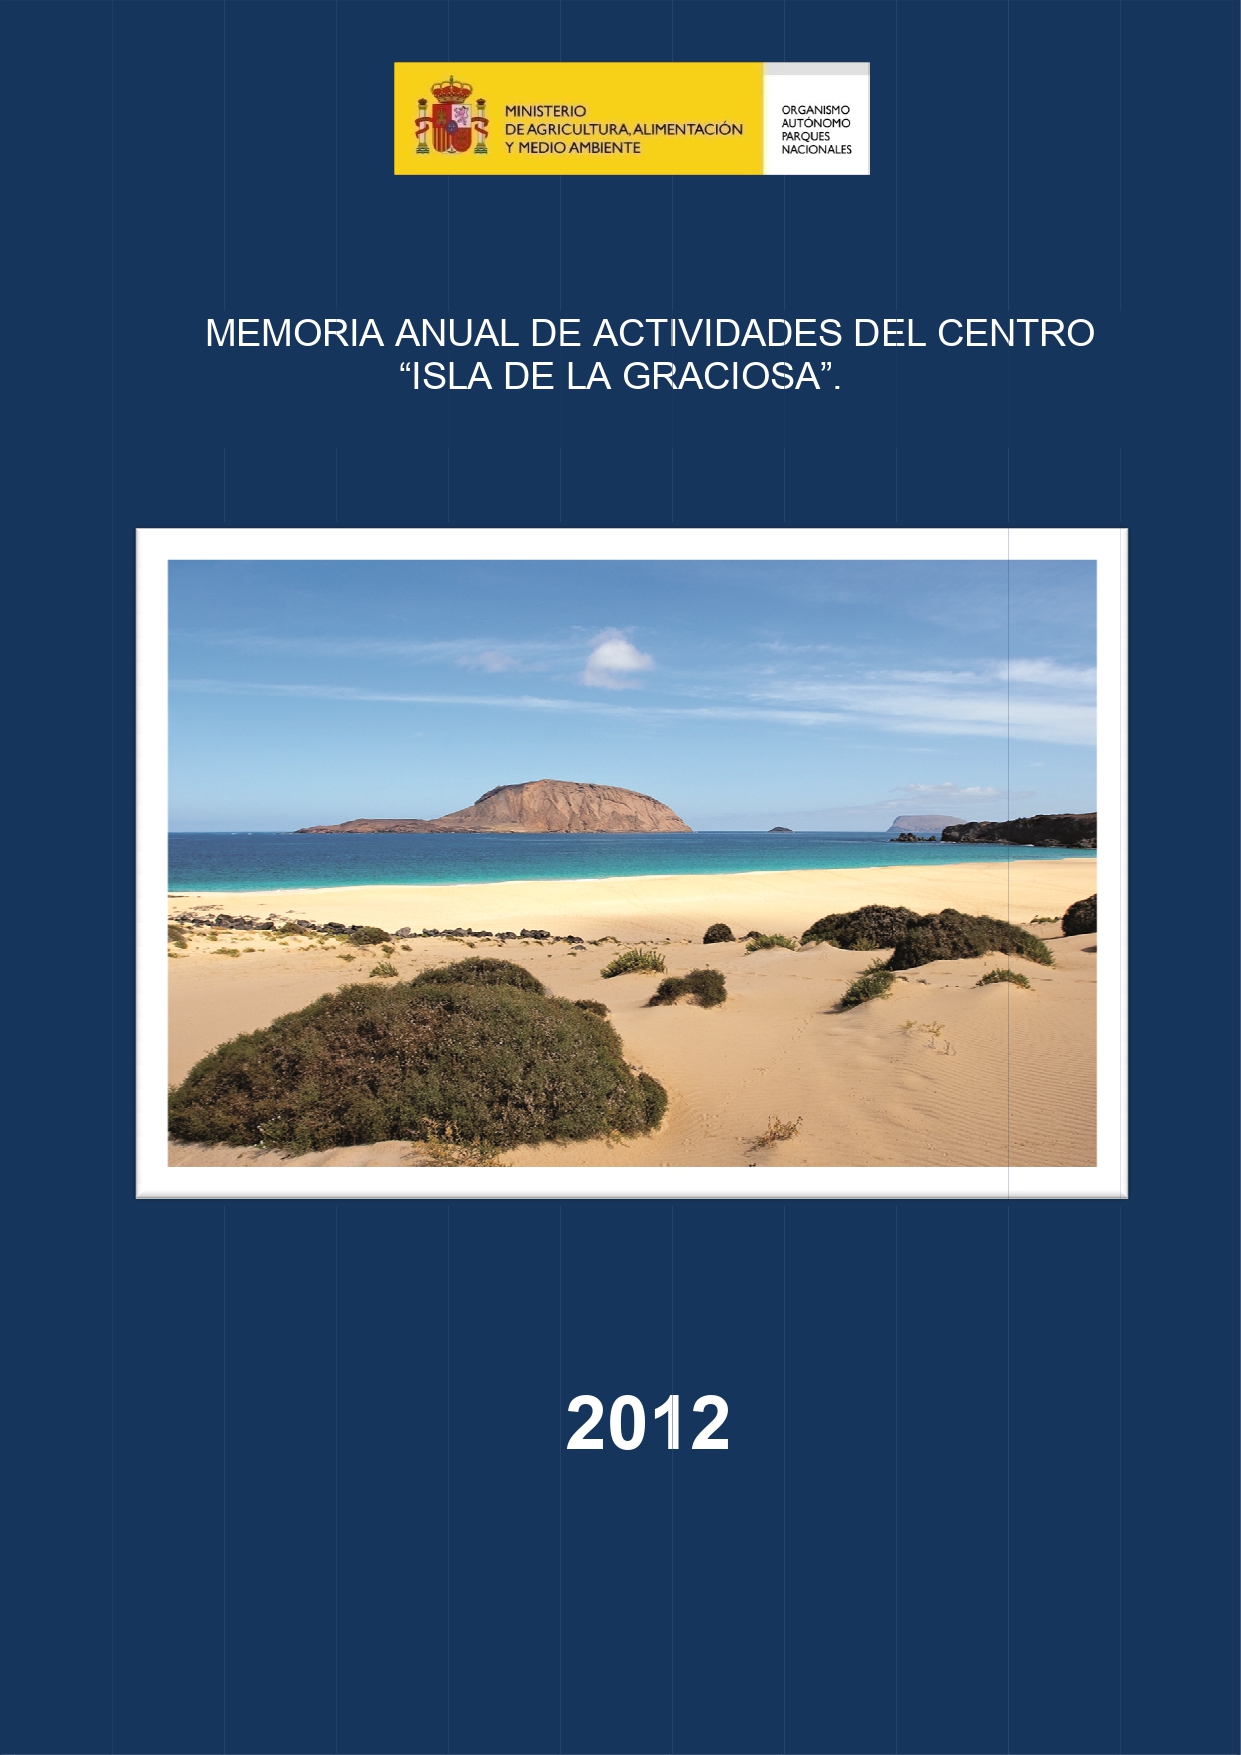 Memoria anual de actividades del centro 'Isla de La Graciosa' (2012) Áreas protegidas Medioambiente y Territorio